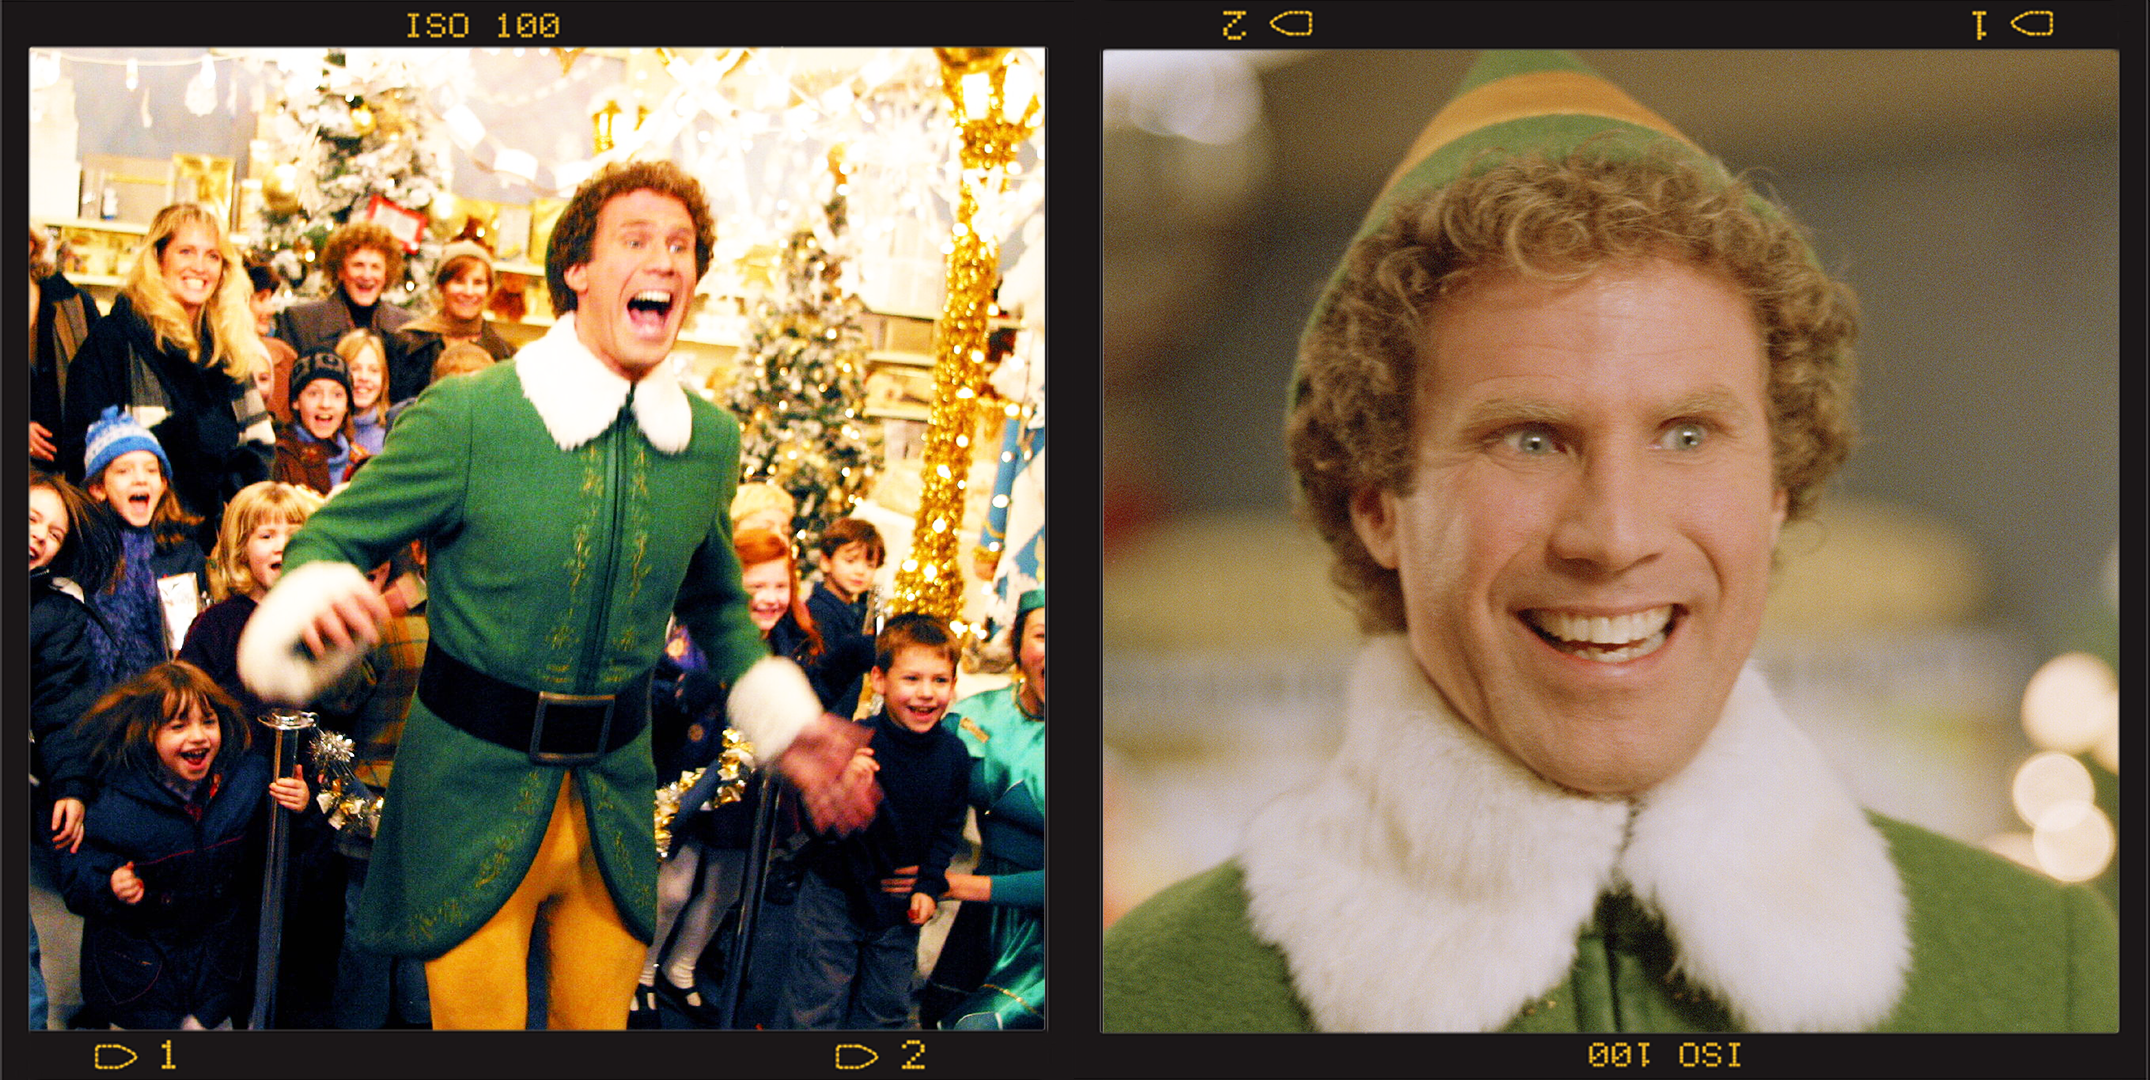 Buddy The Elf Mug, Buddy The Elf Mood Mug, Elf Christmas Gif